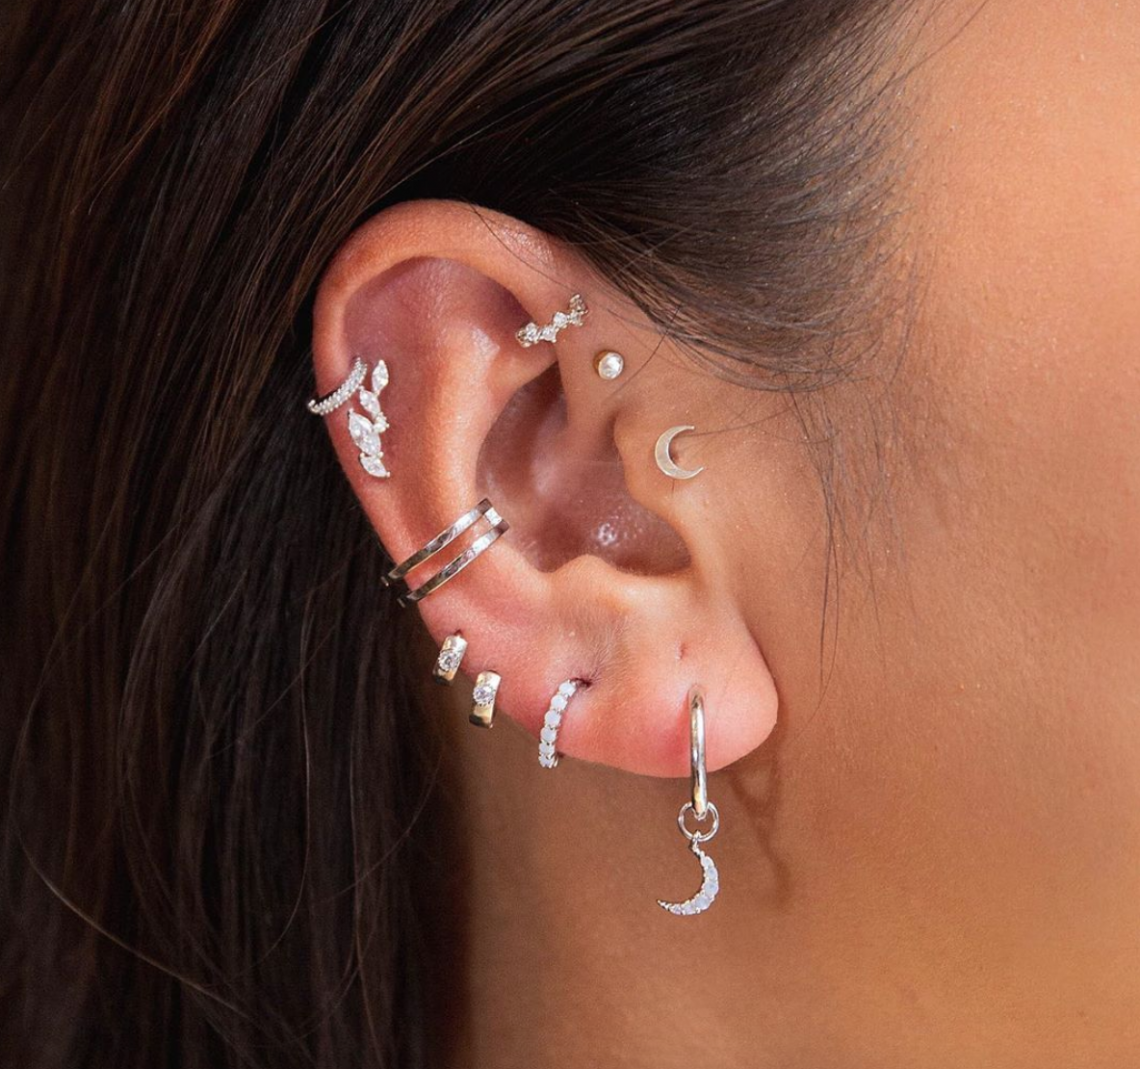 Top 10 ear piercings in the world - Getinfolist.com